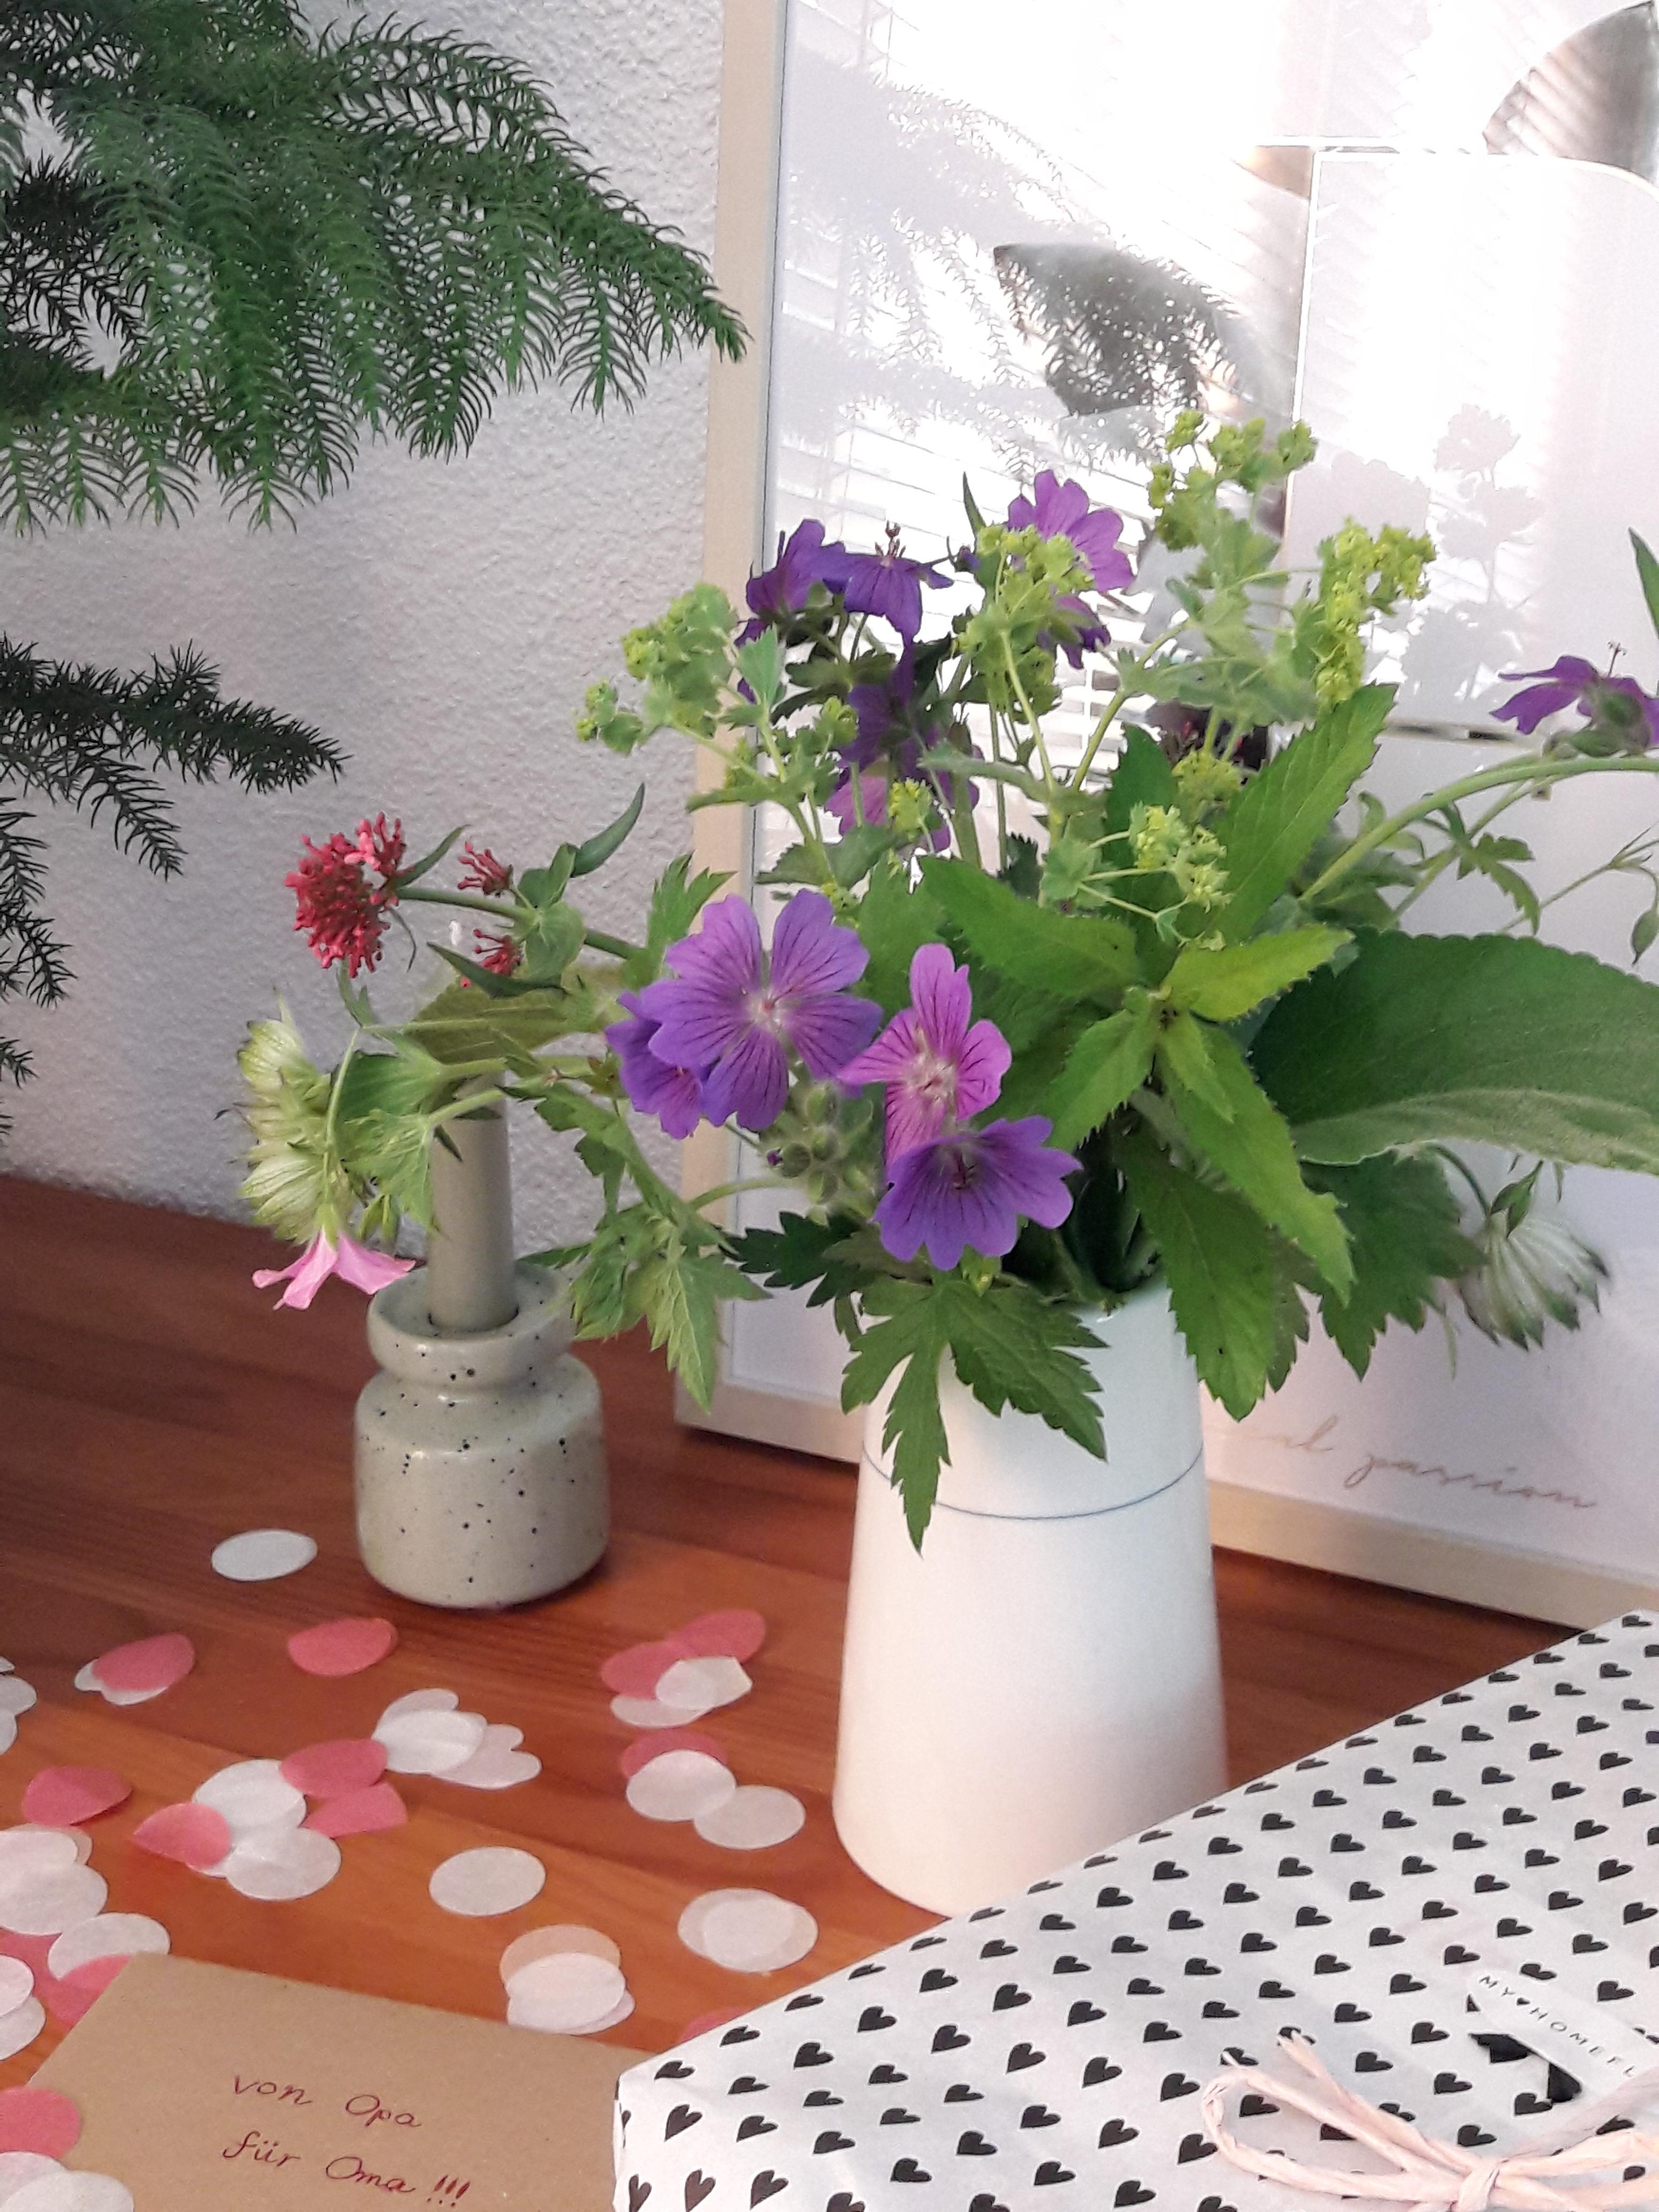 Lieblingsgedanken (Danke Bettina & Alice!😉) zum #freshflowerfriday ...
#blumen #garten #geburtstag